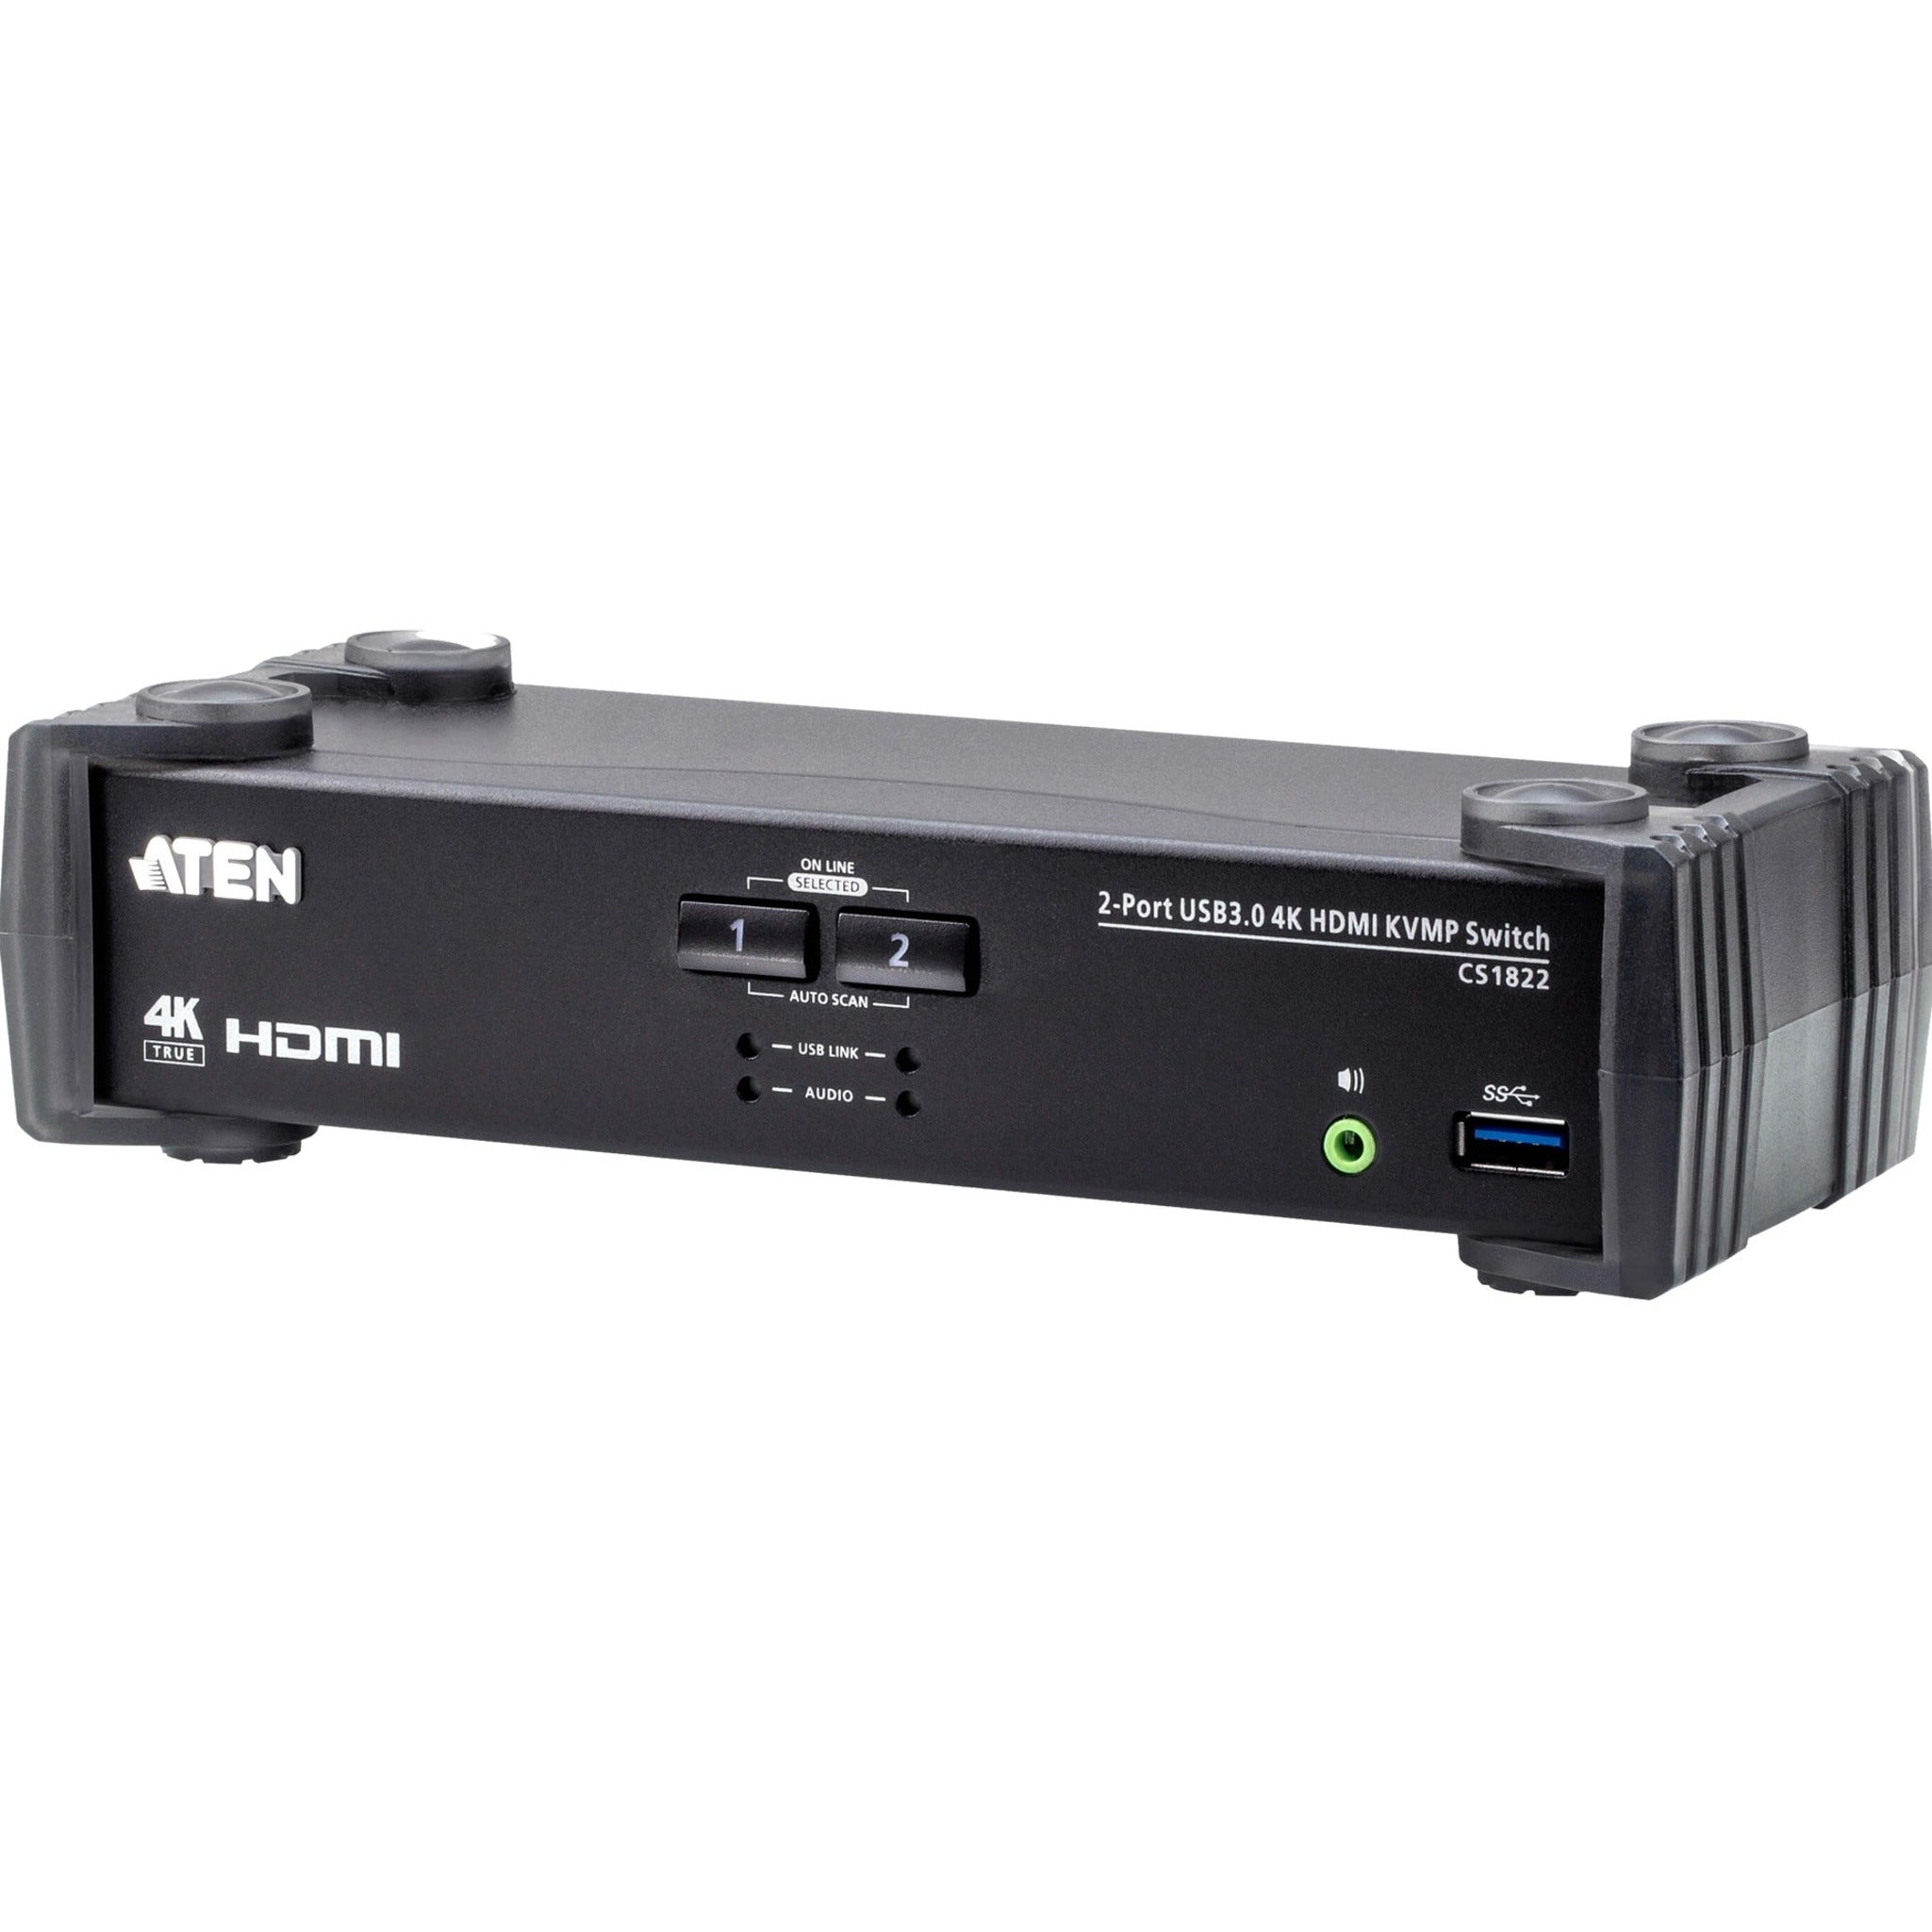 شركة ATEN جهاز تحكم KVMP HDMI 4K USB 3.0 بـ 2 منفذ - CS1822  أقصى دقة فيديو 4096 x 2160